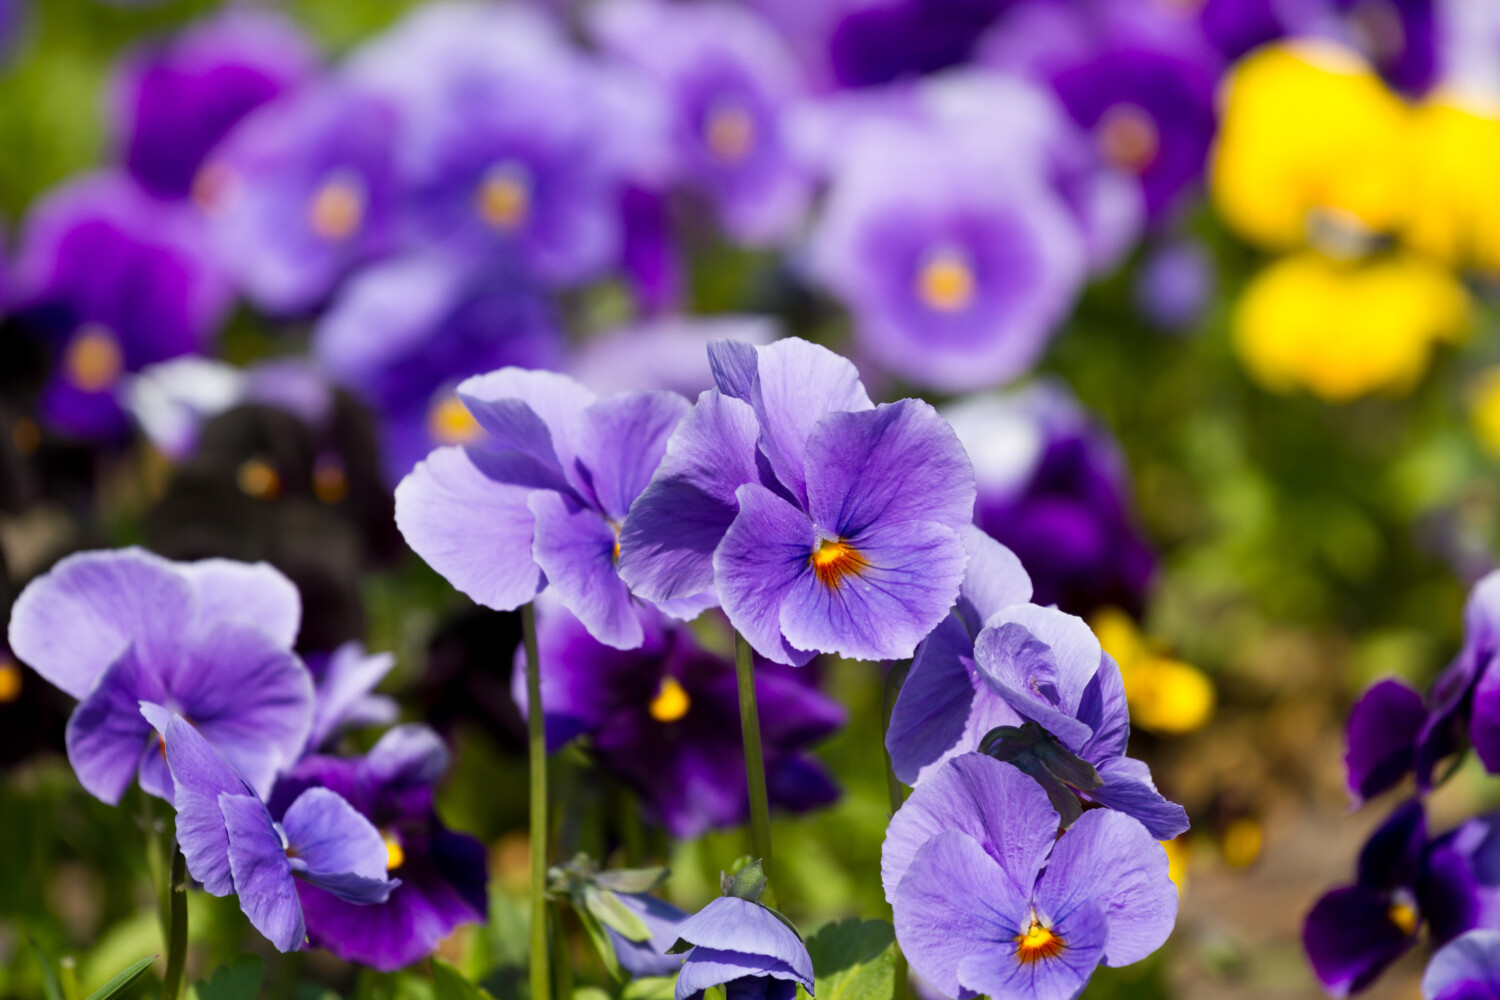 Violas flowers in bloom